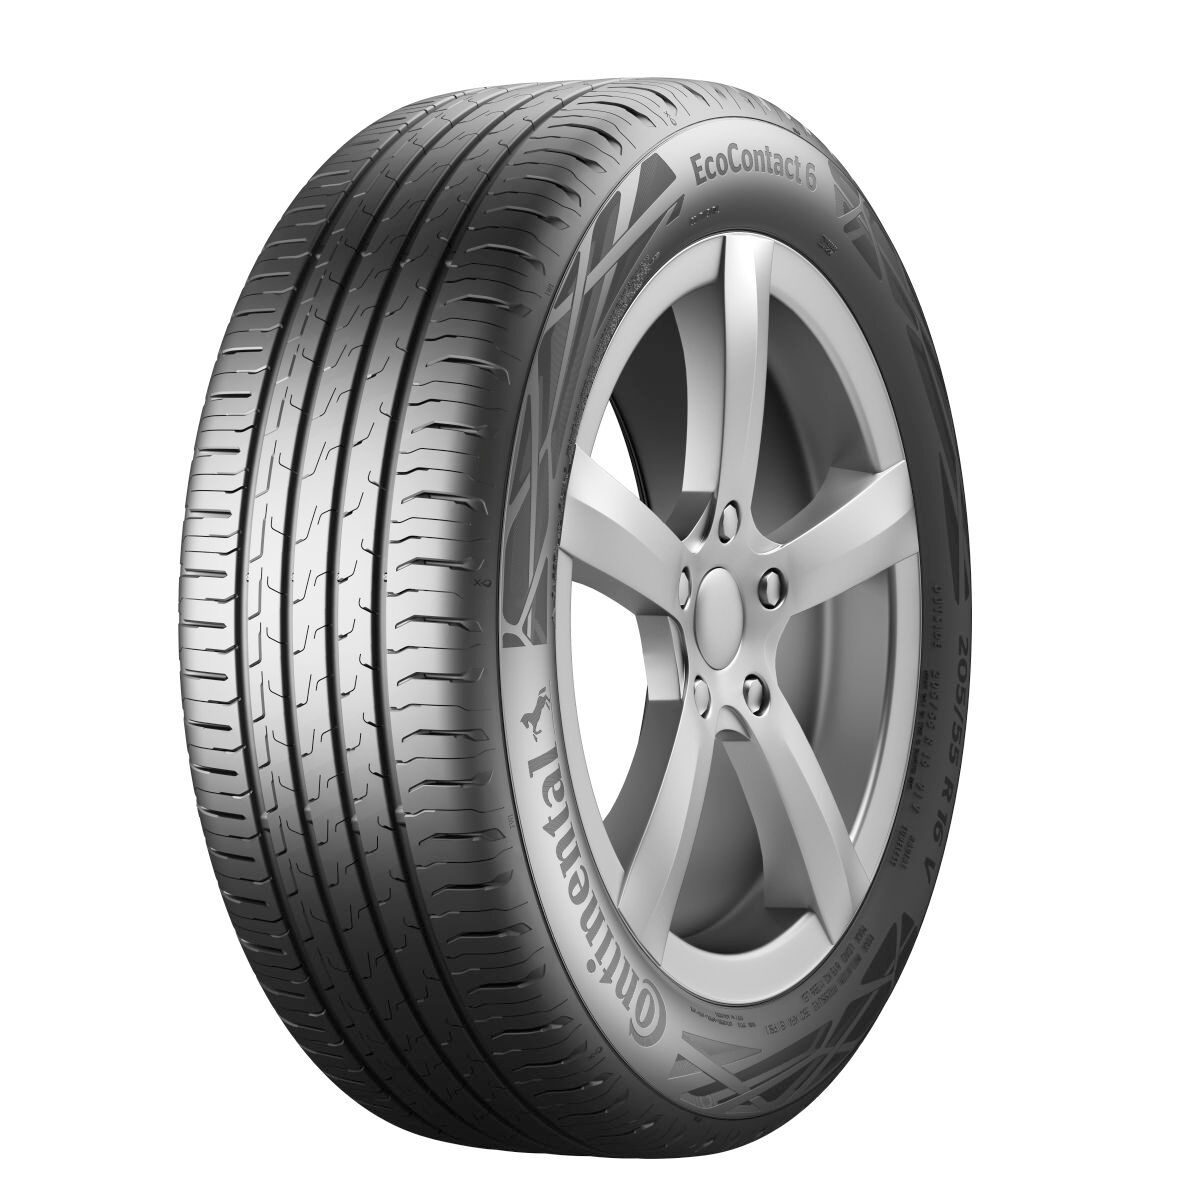 Neumáticos de verano CONTINENTAL EcoContact 6 205/45R17 XL 88H